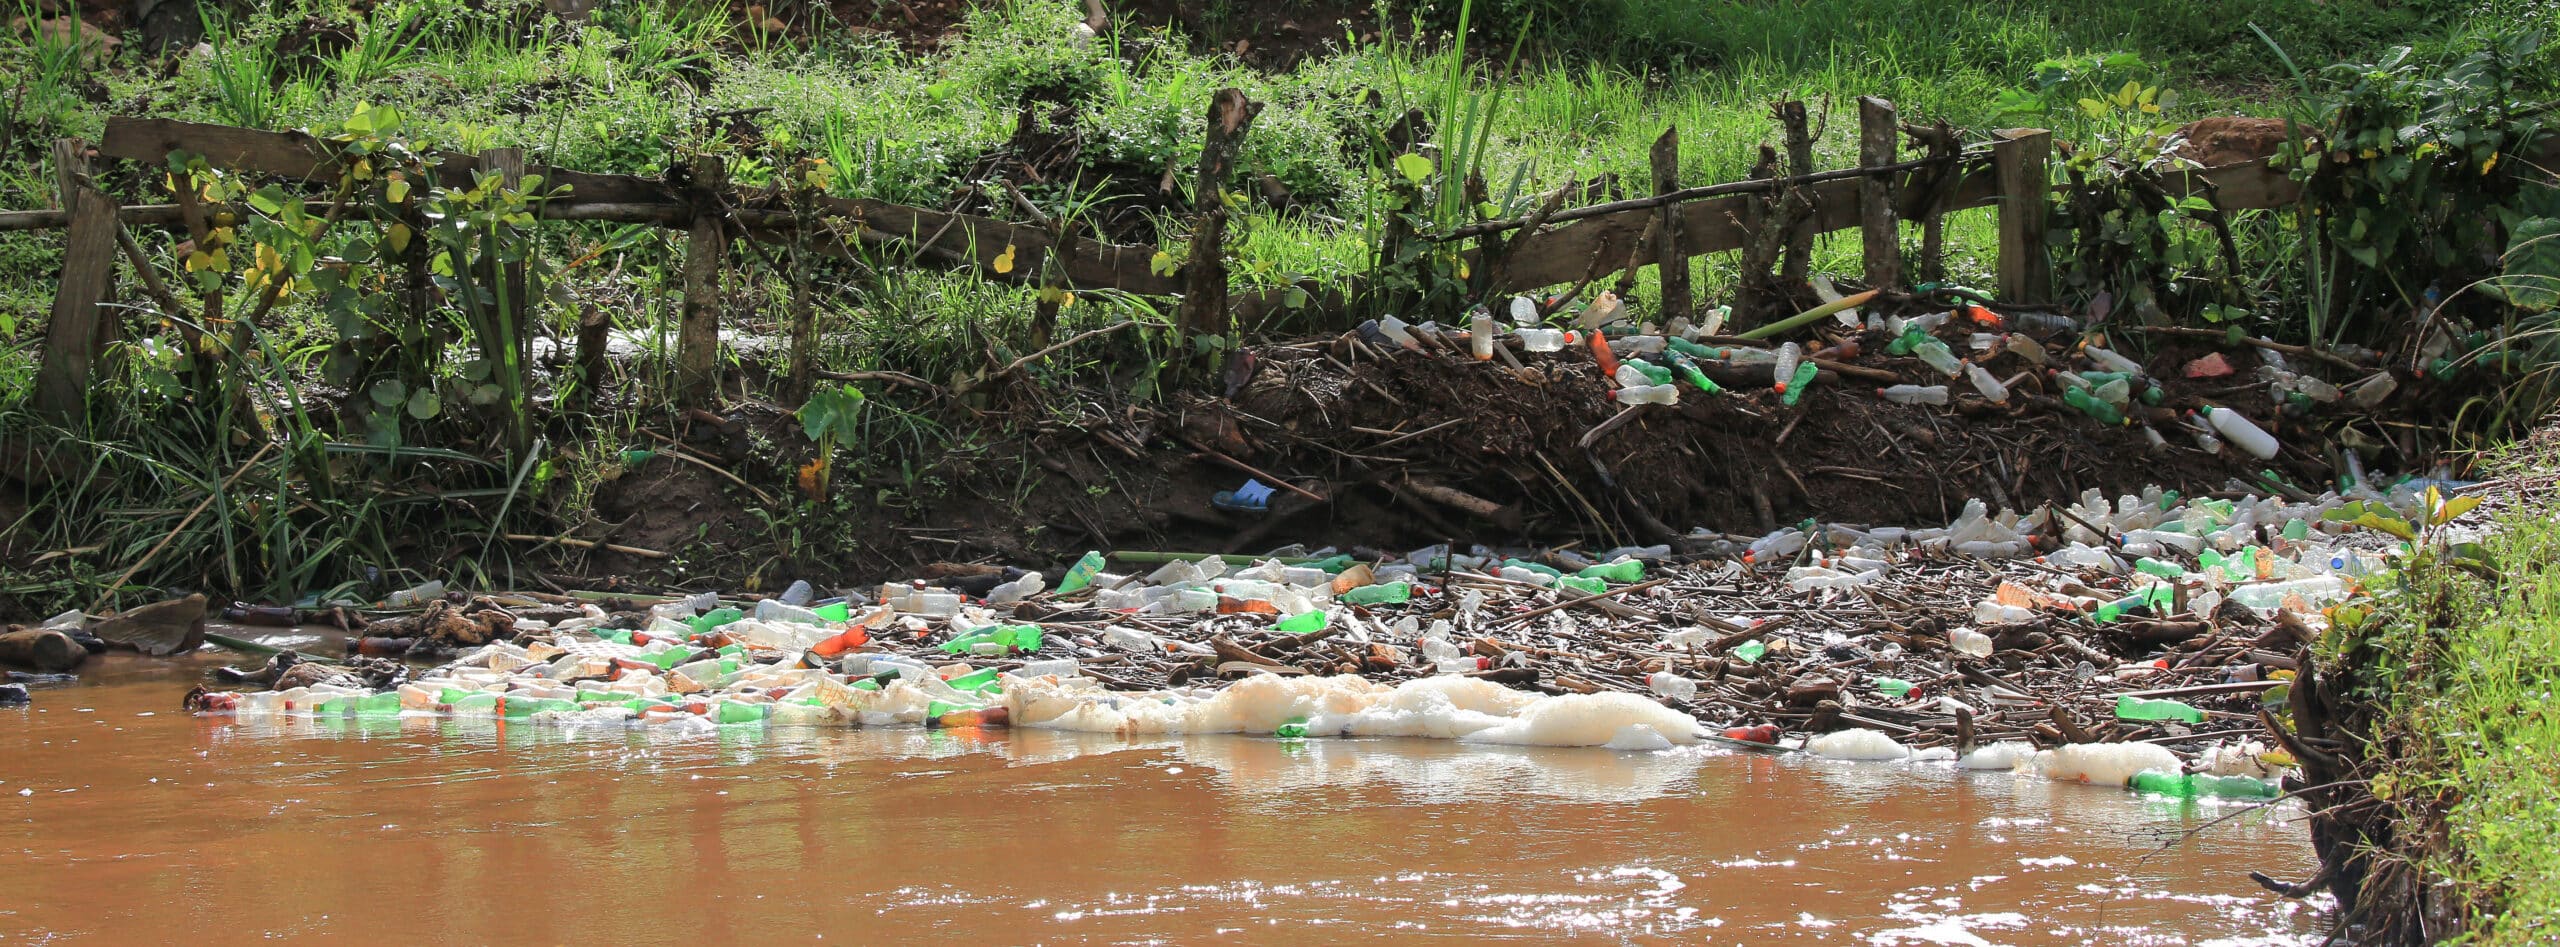 Plastic bottles on riverbend